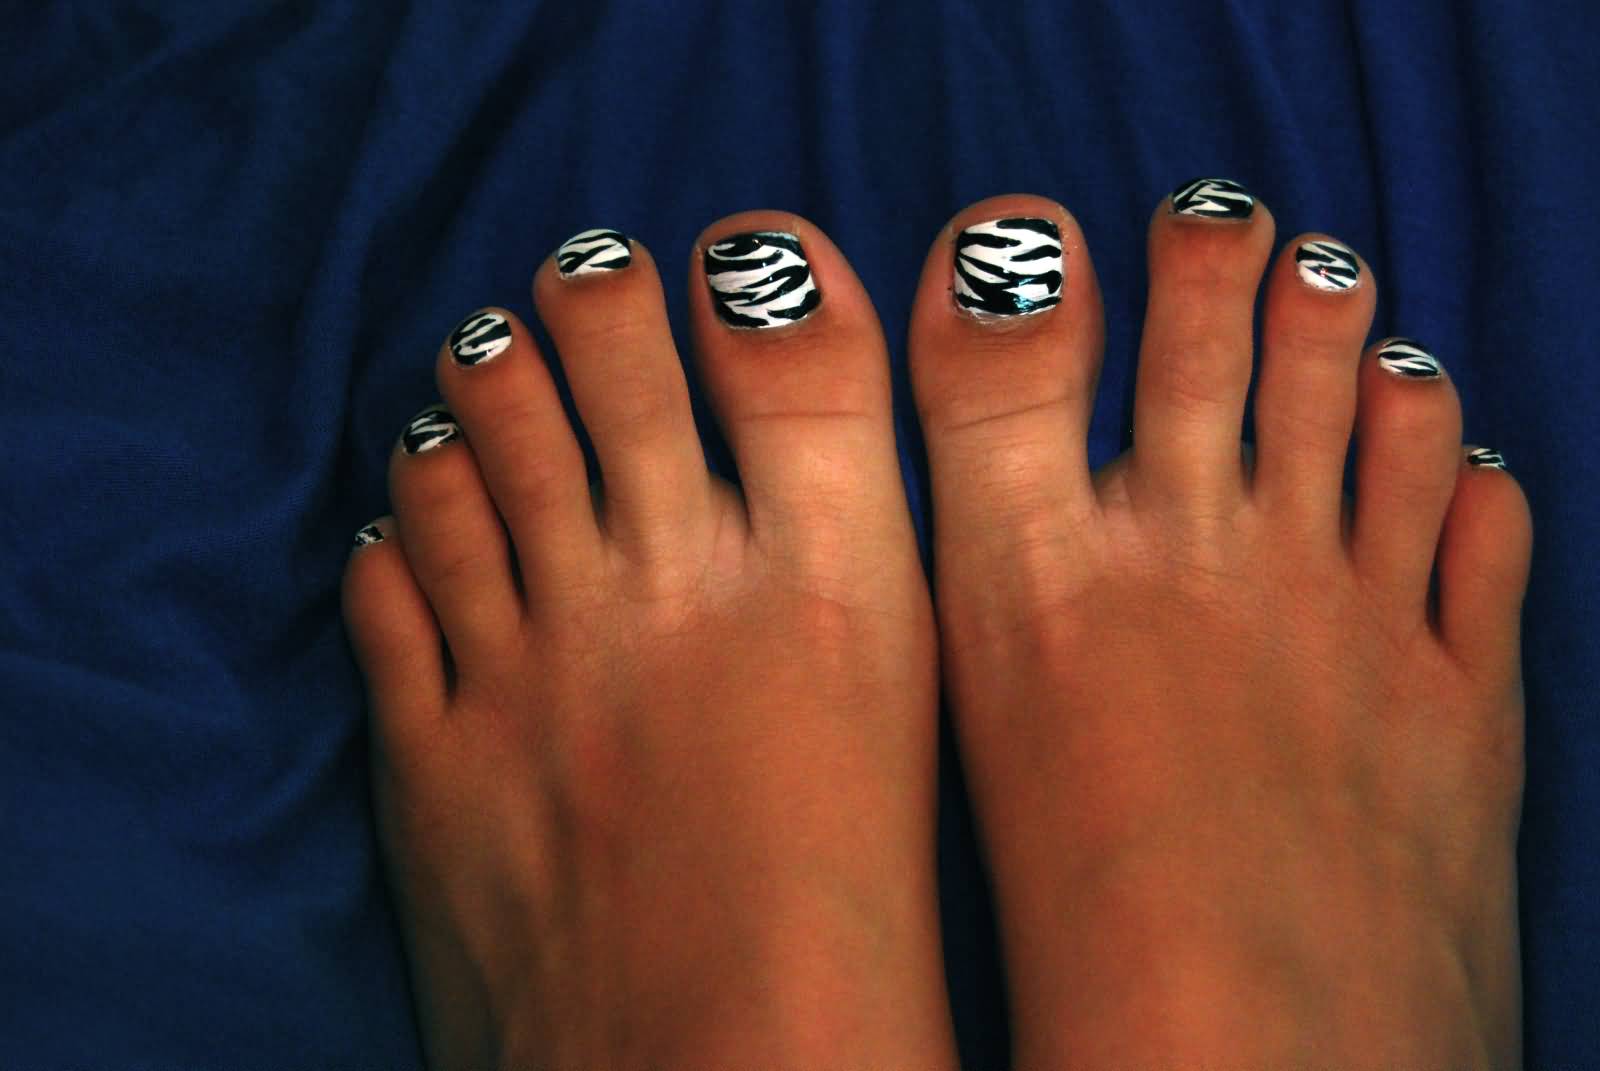 Black And White Zebra Print Toe Nail Art Design